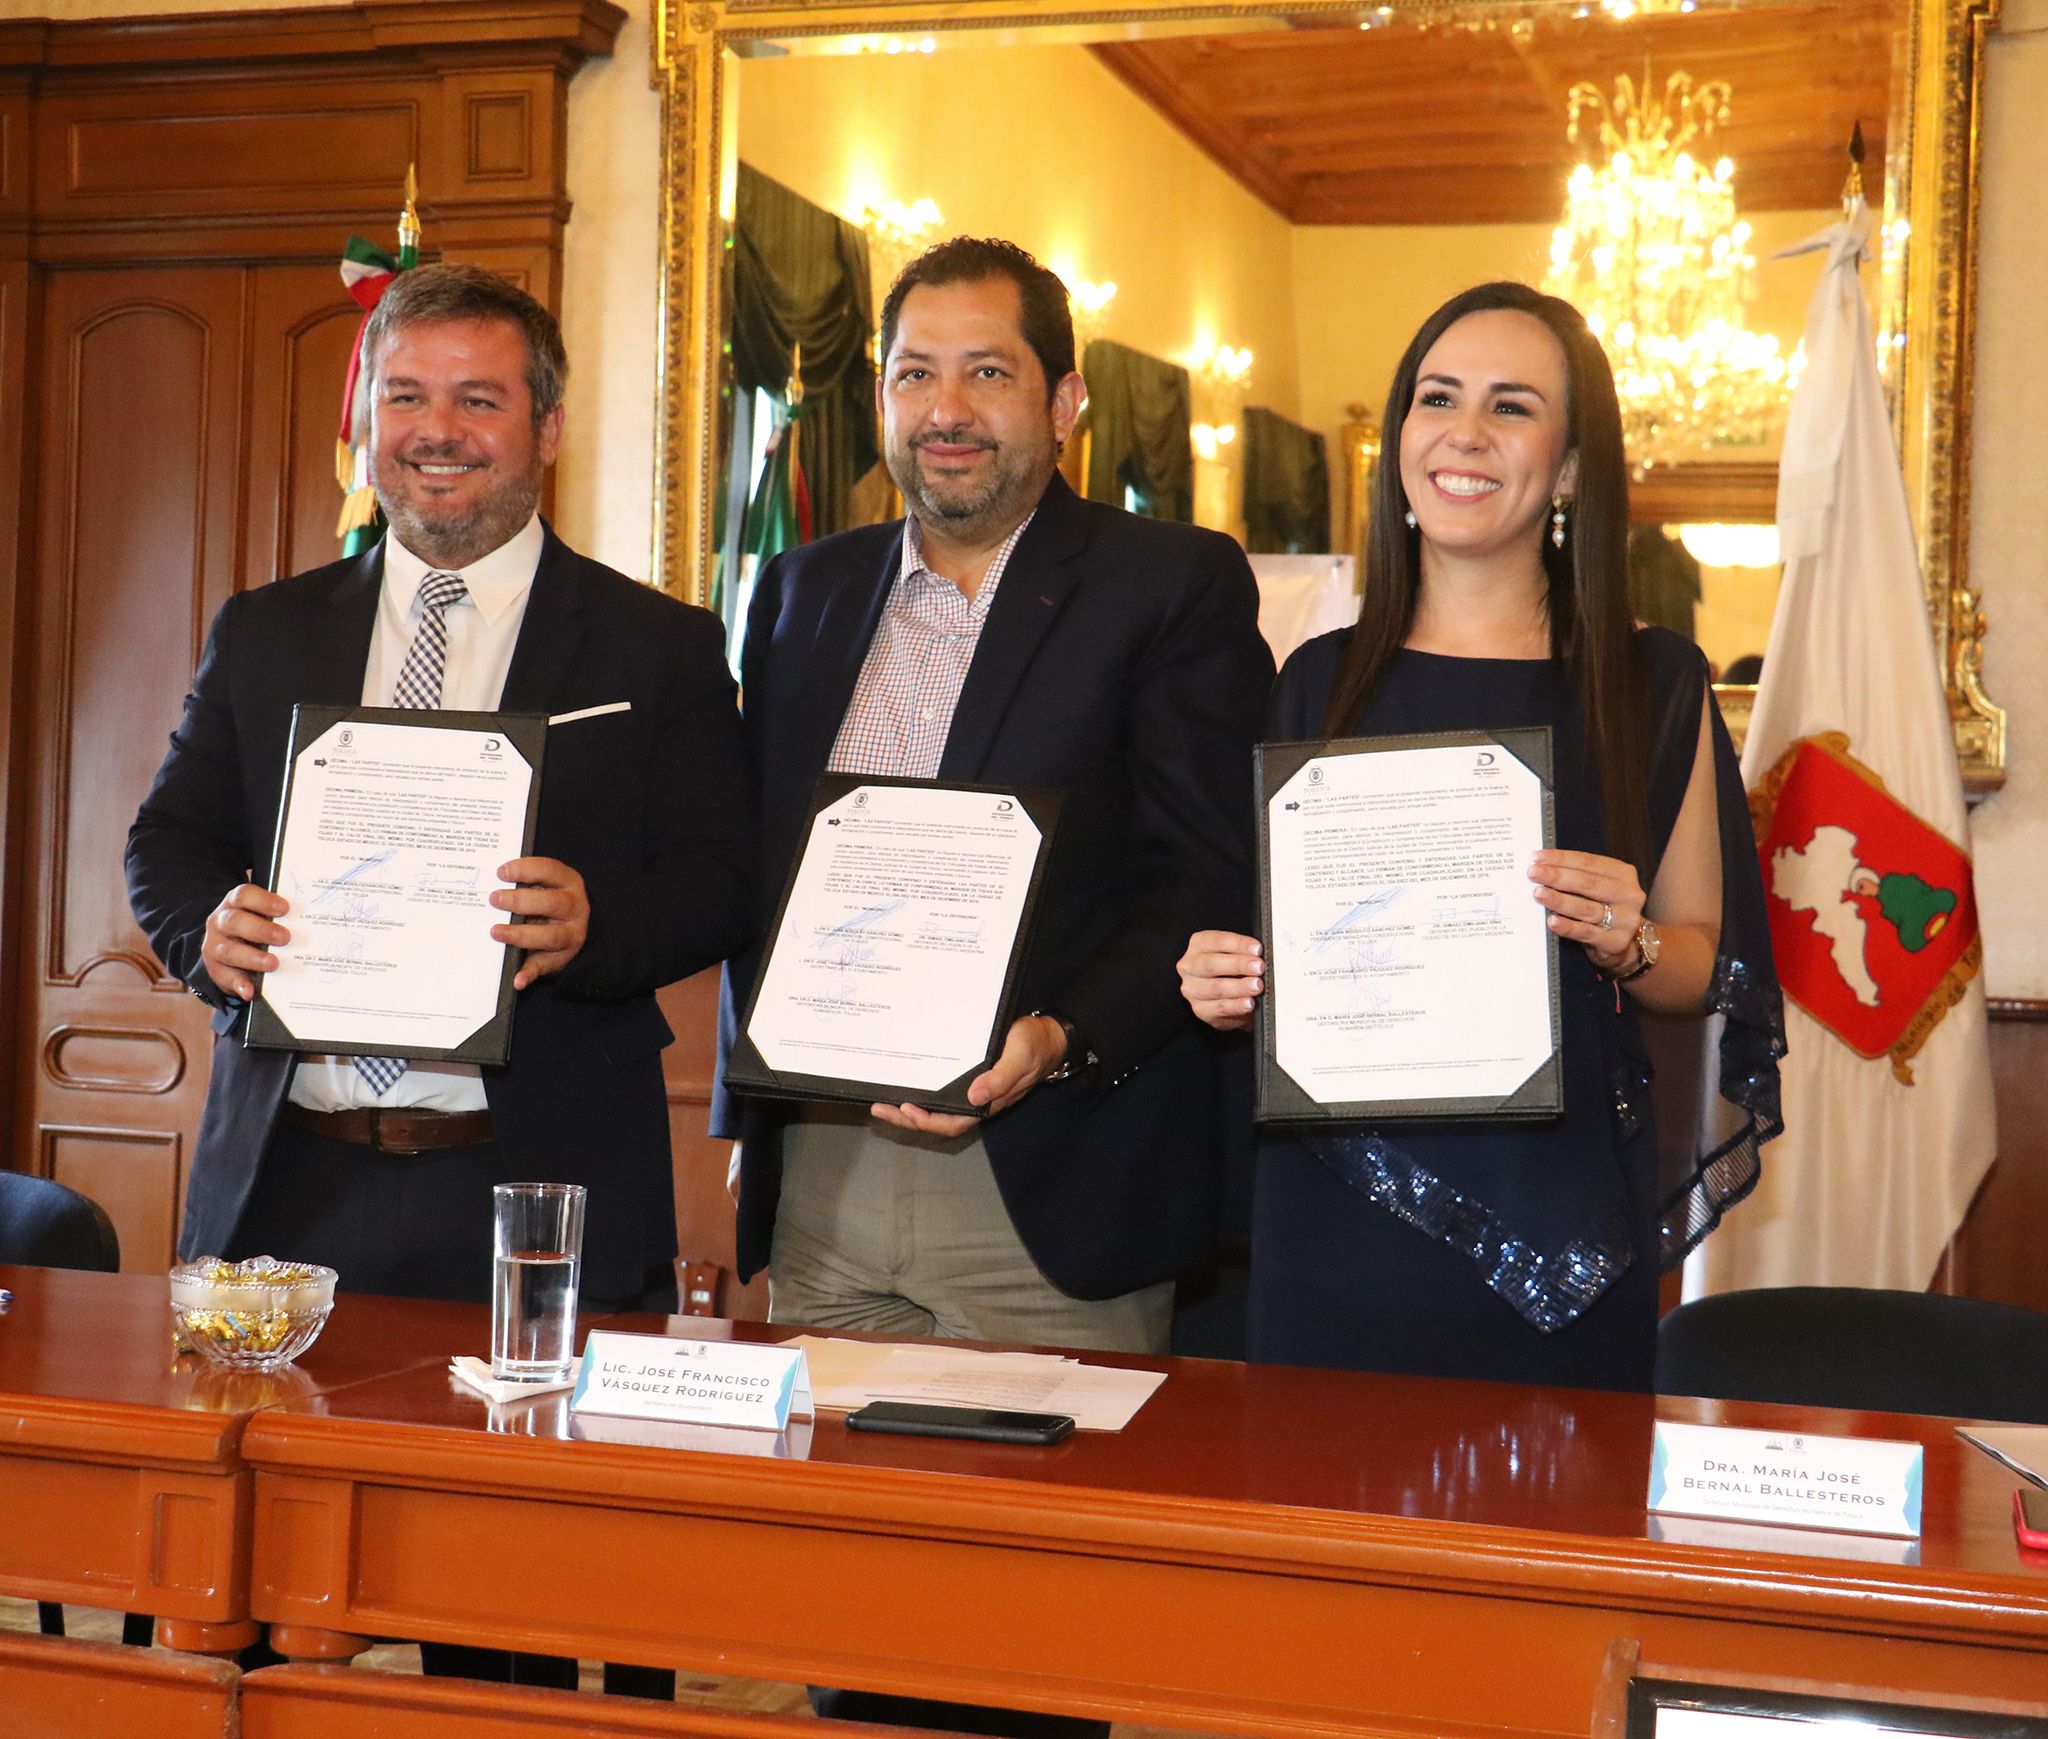 firman-convenio-toluca-y-la-defensoria-del-pueblo-de-rio-cuarto-argentina